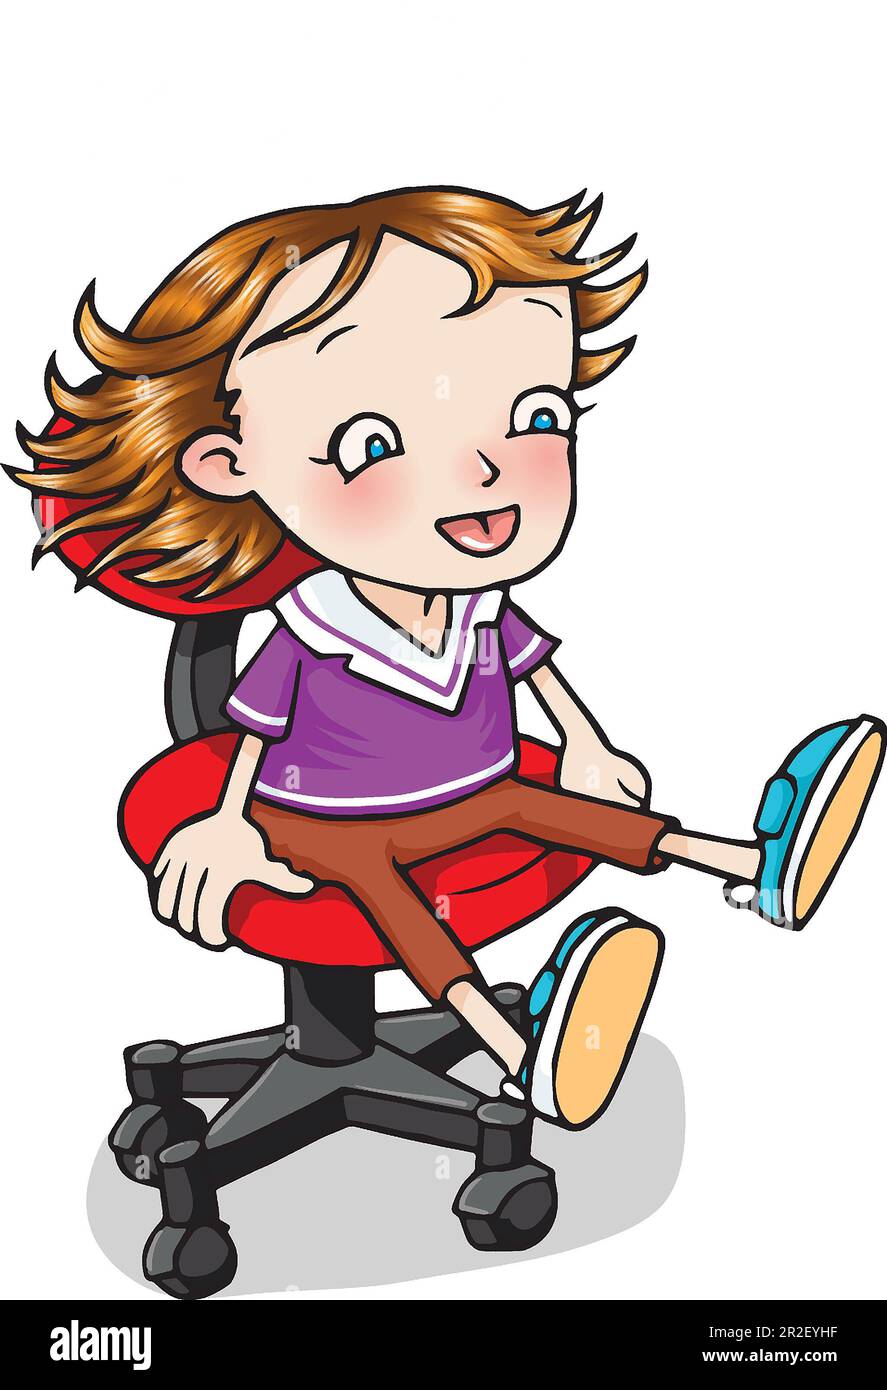 Illustrazione, giovane ragazza bianca, 5-7 anni, che gira su sedia da ufficio, illustrazione di bambini, bambini attivi, attività quotidiane, coordinazione mano-occhio Foto Stock